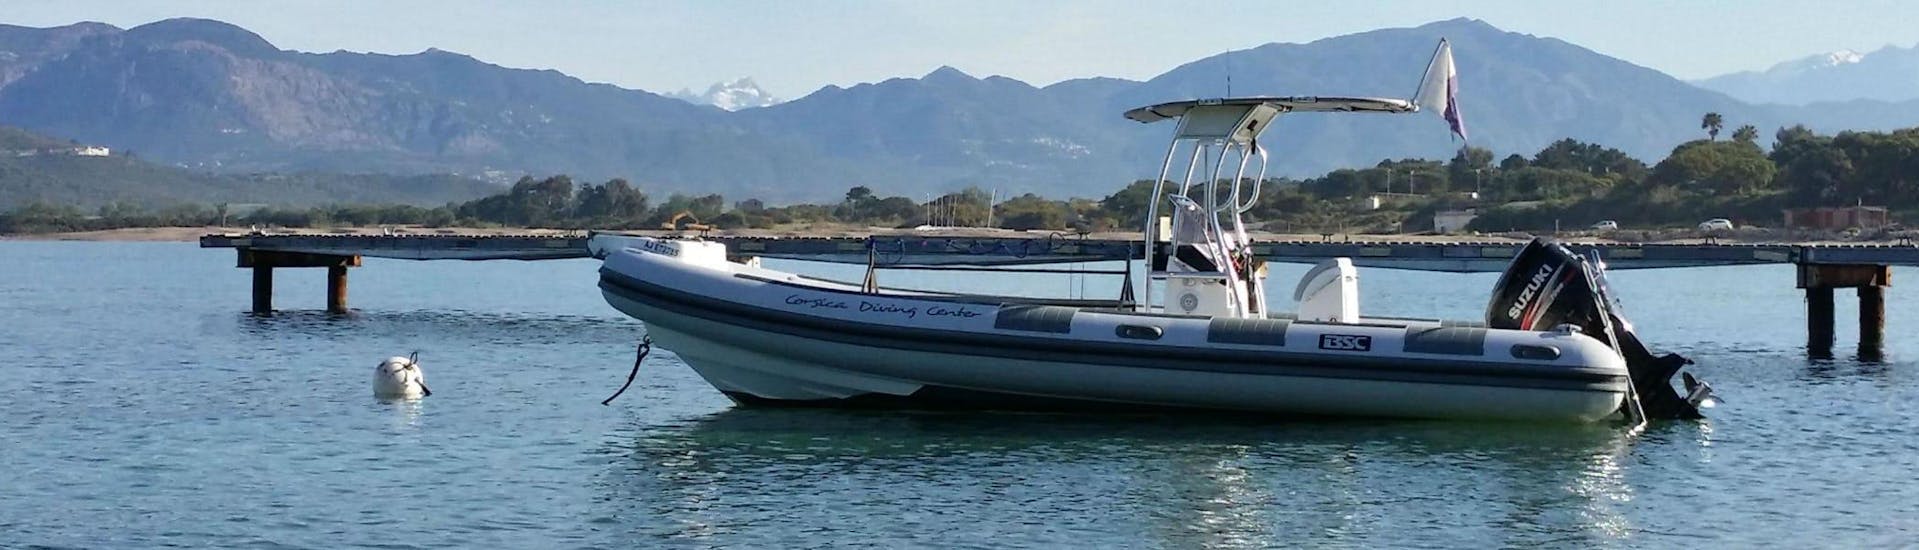 Photo du bateau utilisé pendant le Baptême de Plongée dans le golfe d'Ajaccio pour Débutants avec Maeva Plongée.